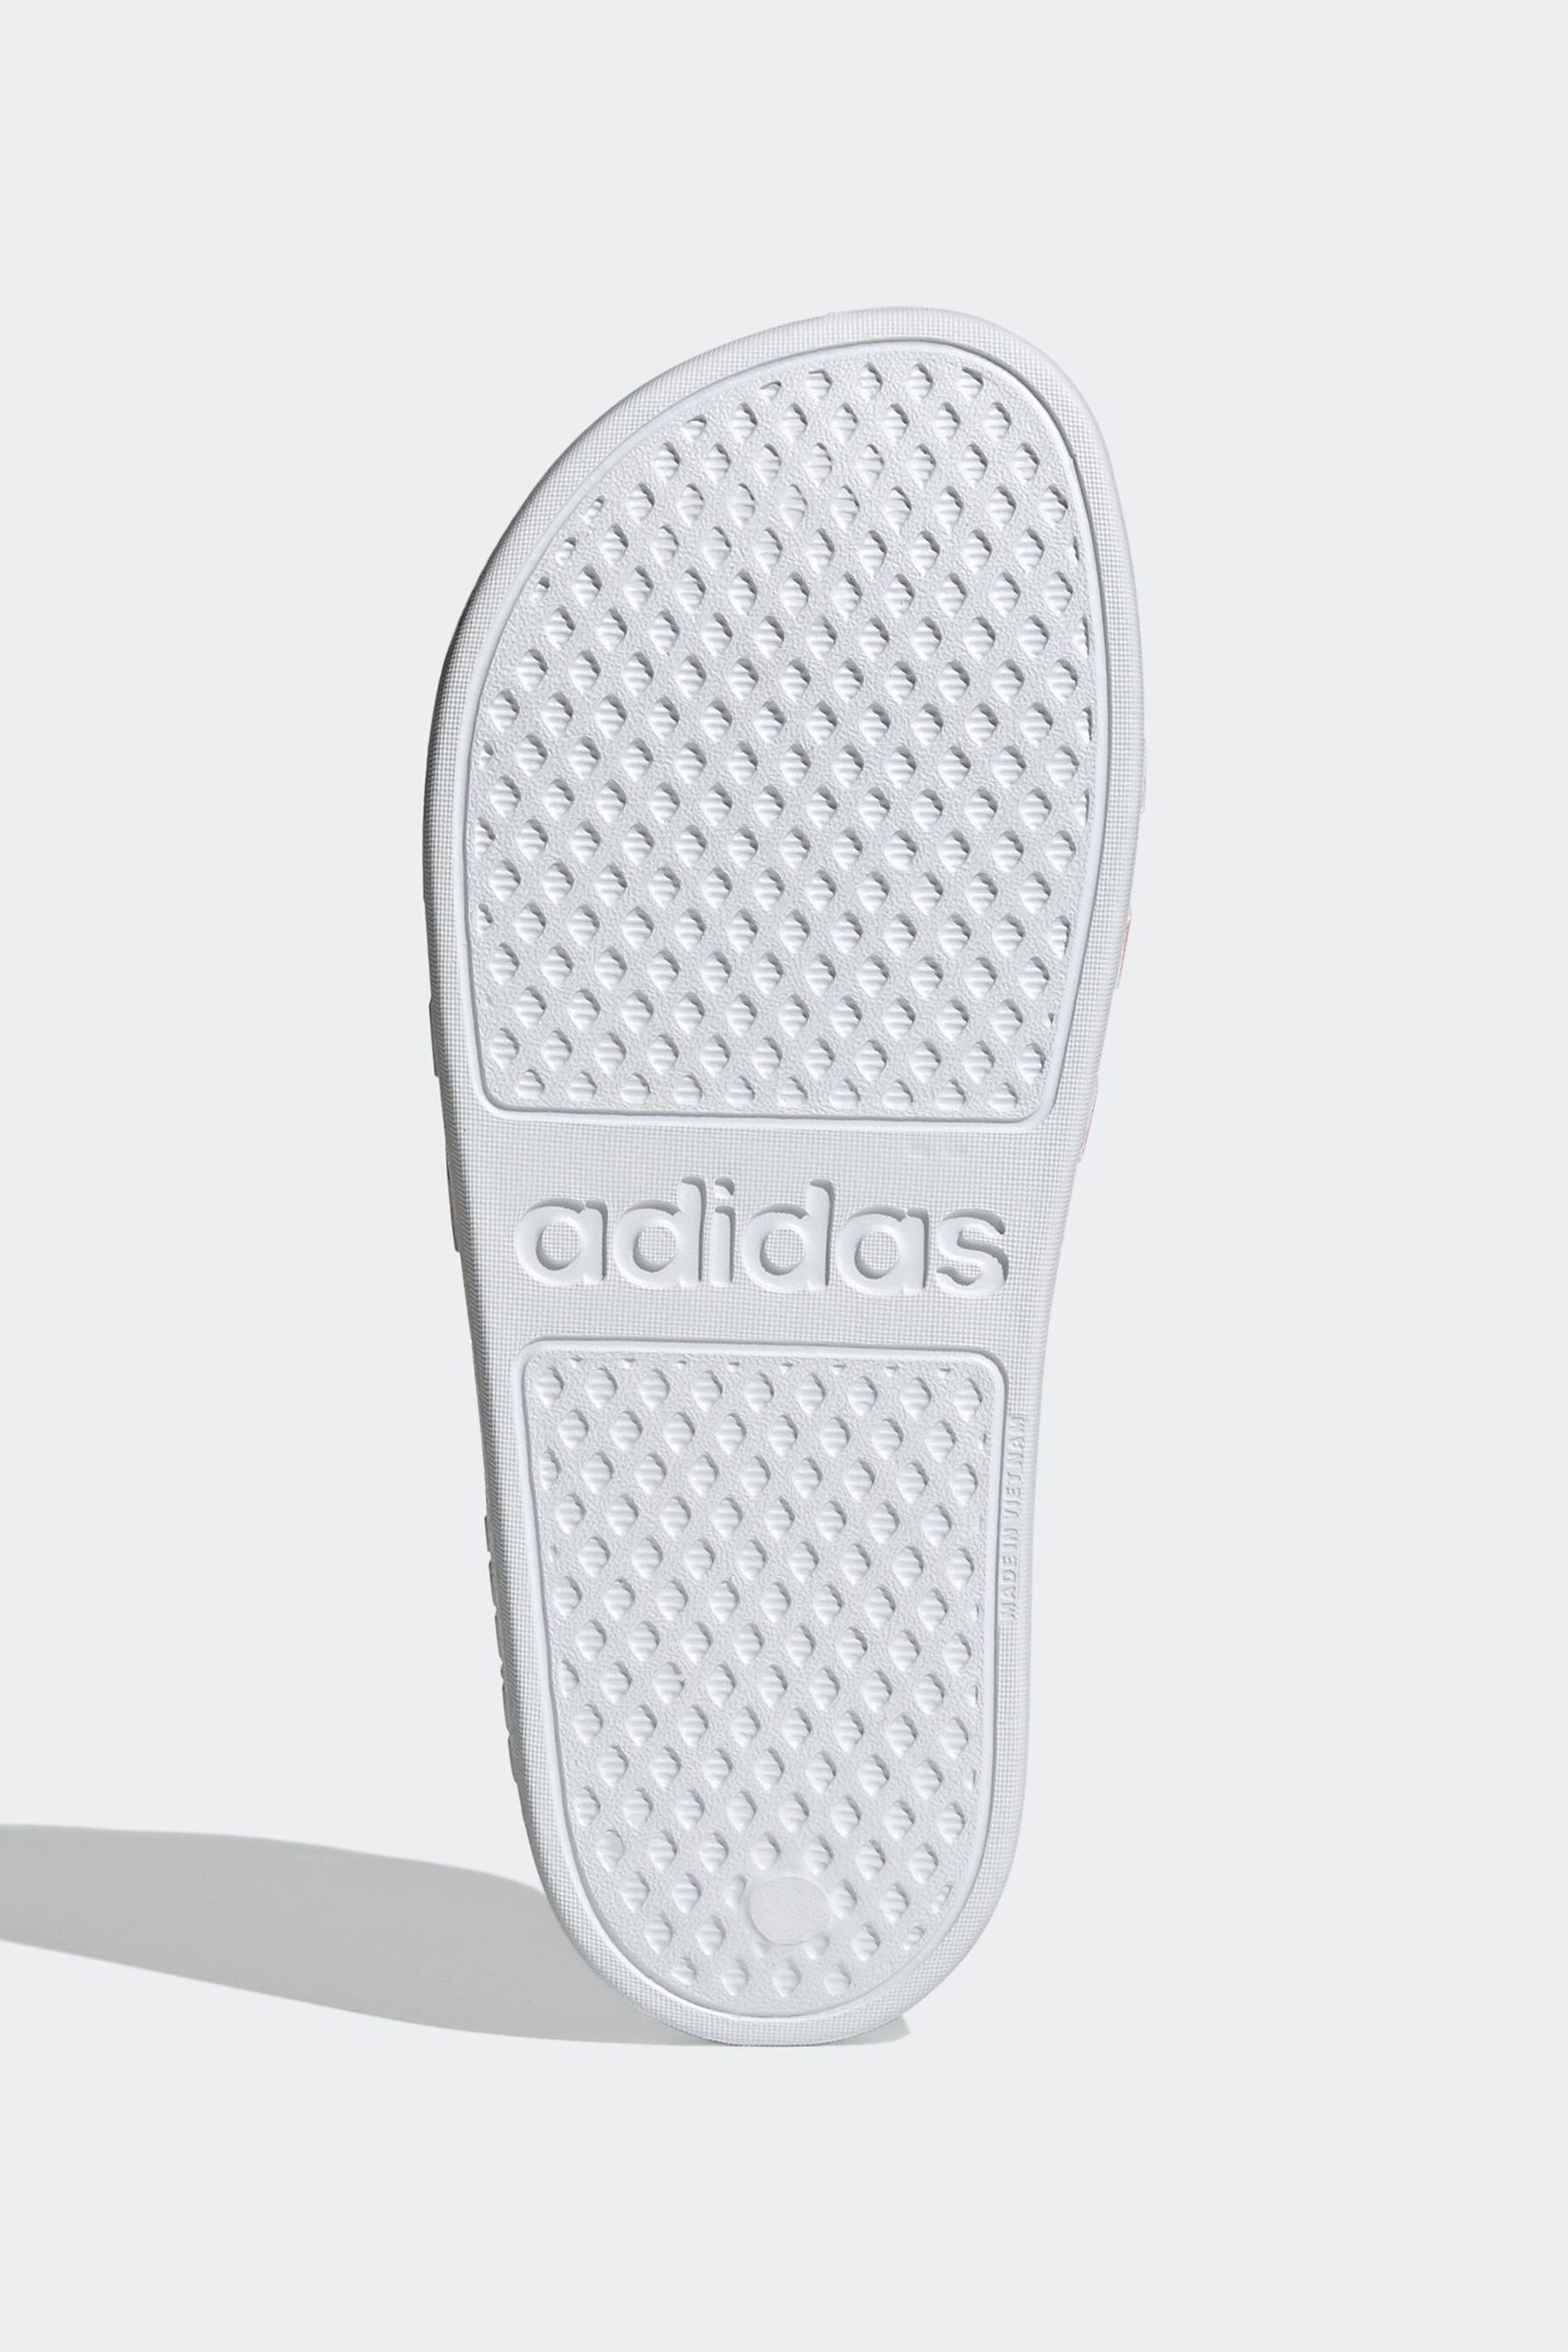 adidas White Adilette Aqua Sliders - Image 7 of 9